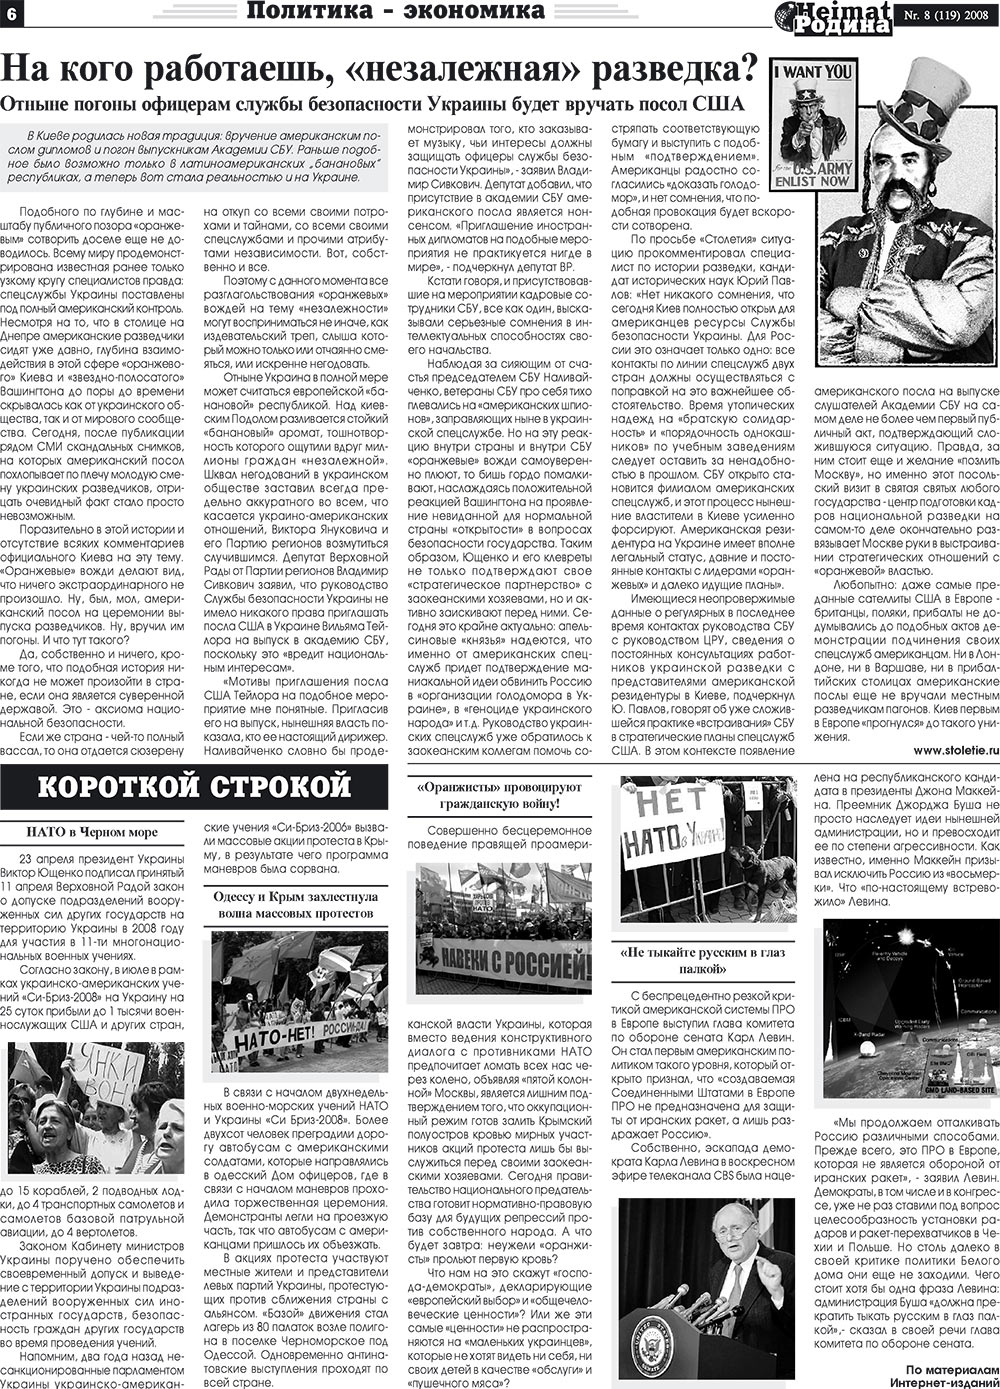 Heimat-Родина (газета). 2008 год, номер 8, стр. 6